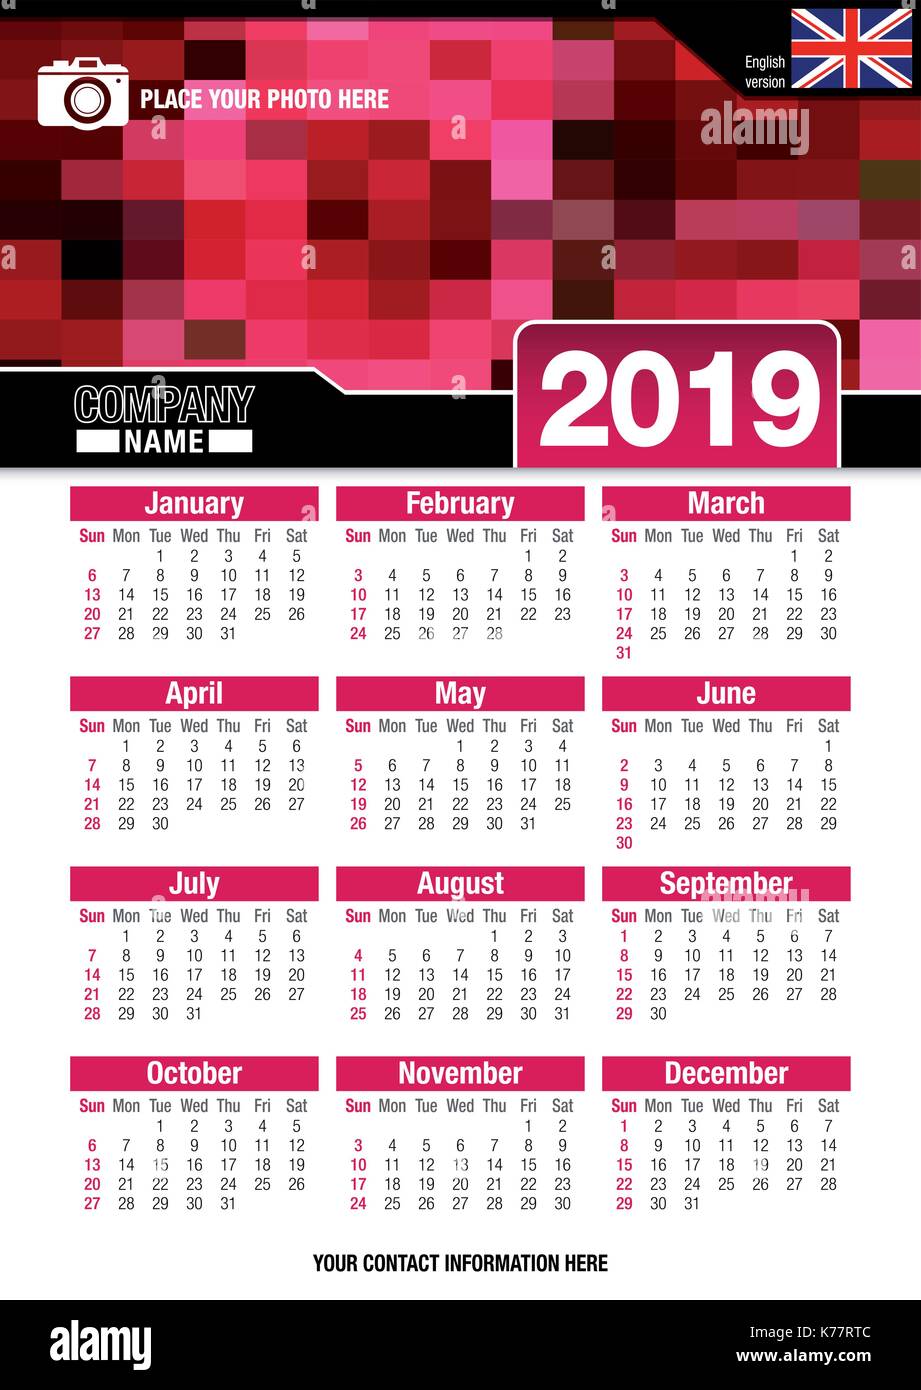 Utile calendario da parete 2019 con design di colori rosso mosaico. Formato A4 verticale. Dimensioni: 210mm x 297mm. Versione Inglese - immagine vettoriale Illustrazione Vettoriale